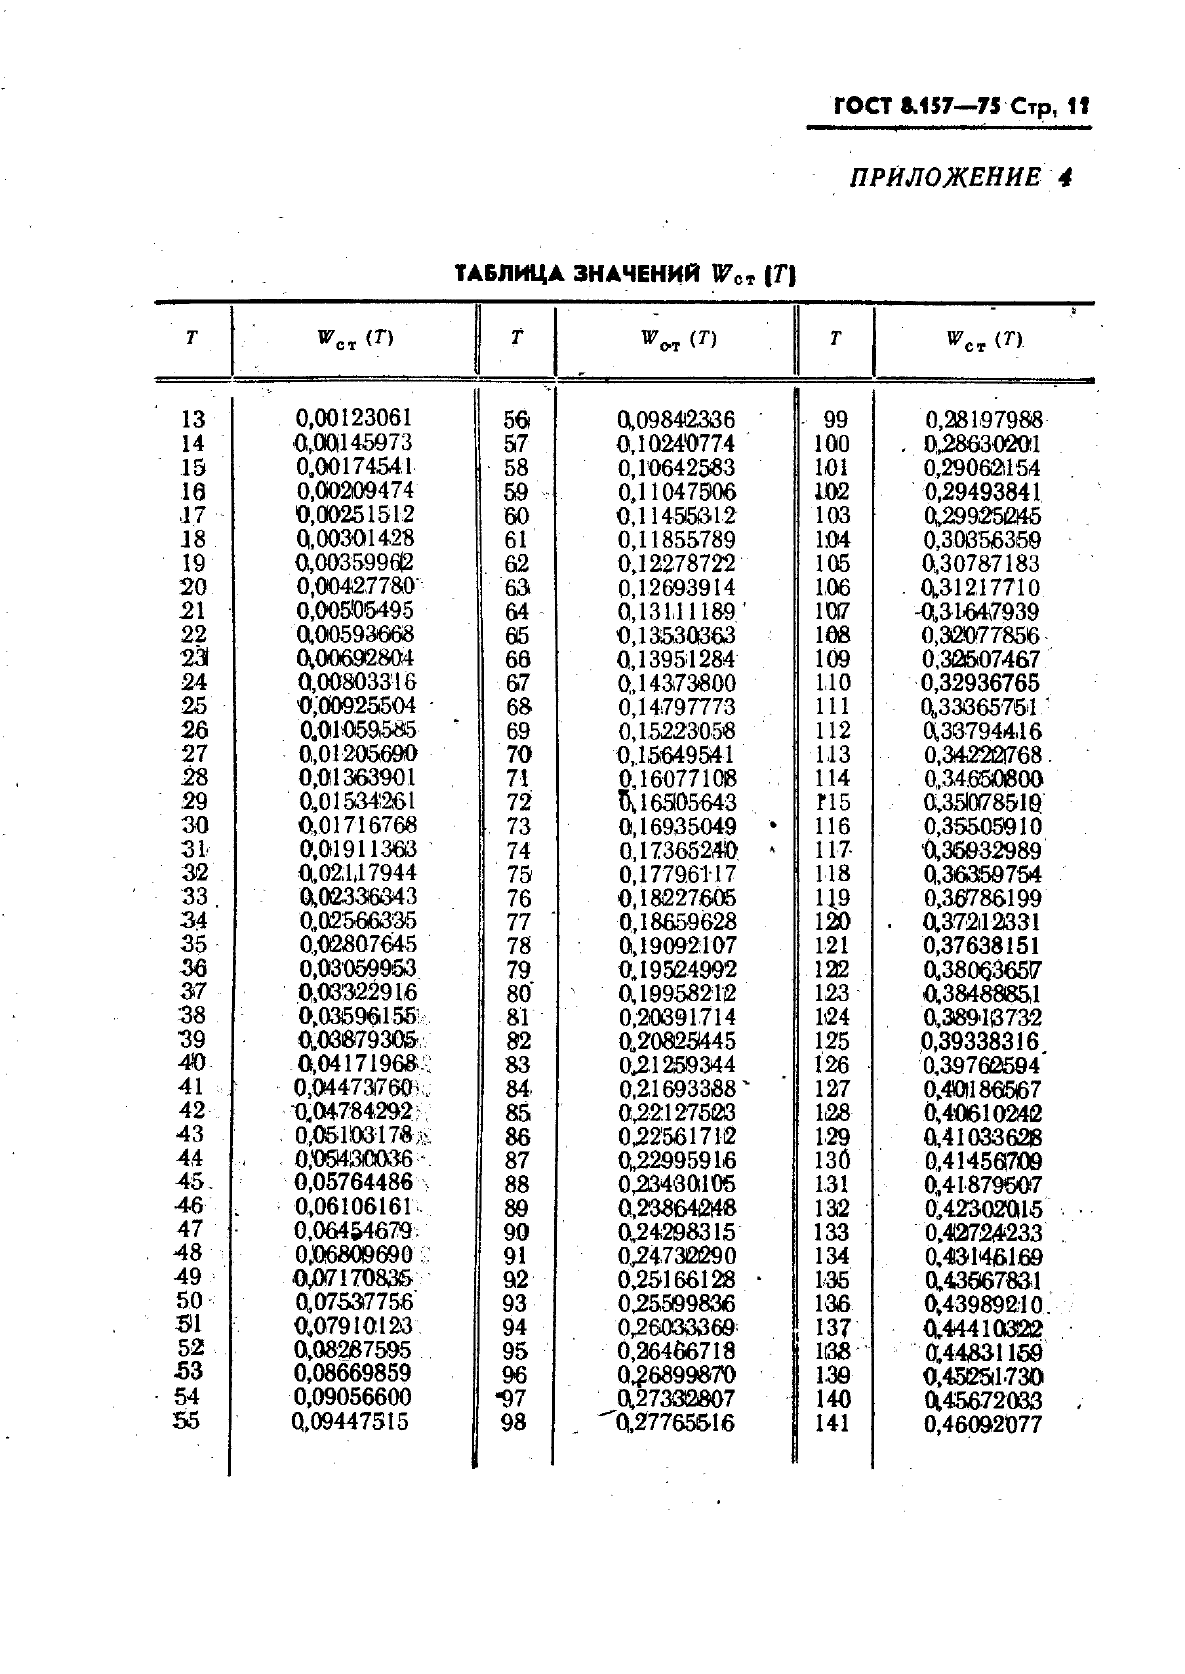  8.157-75,  12.